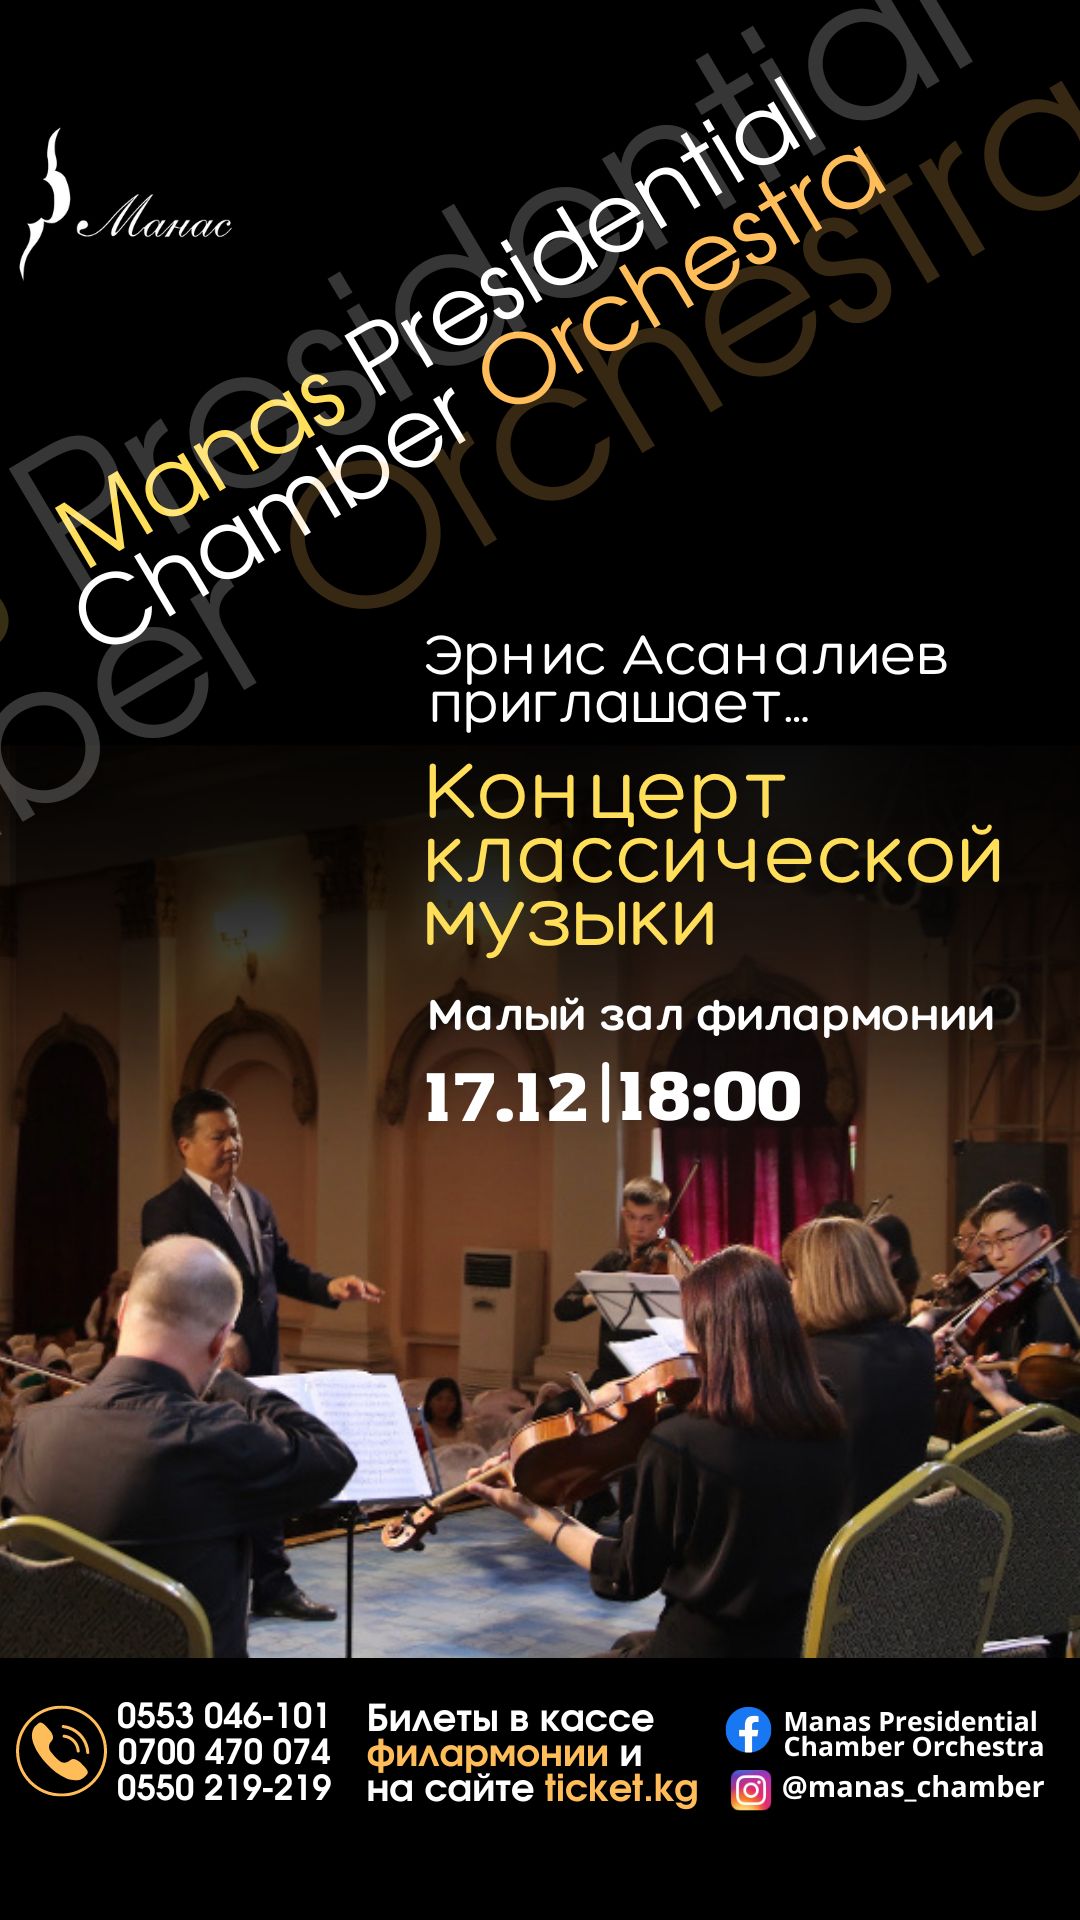 Эрнис Асаналиев приглашает. Концерт классической музыки состоится 17 декабря